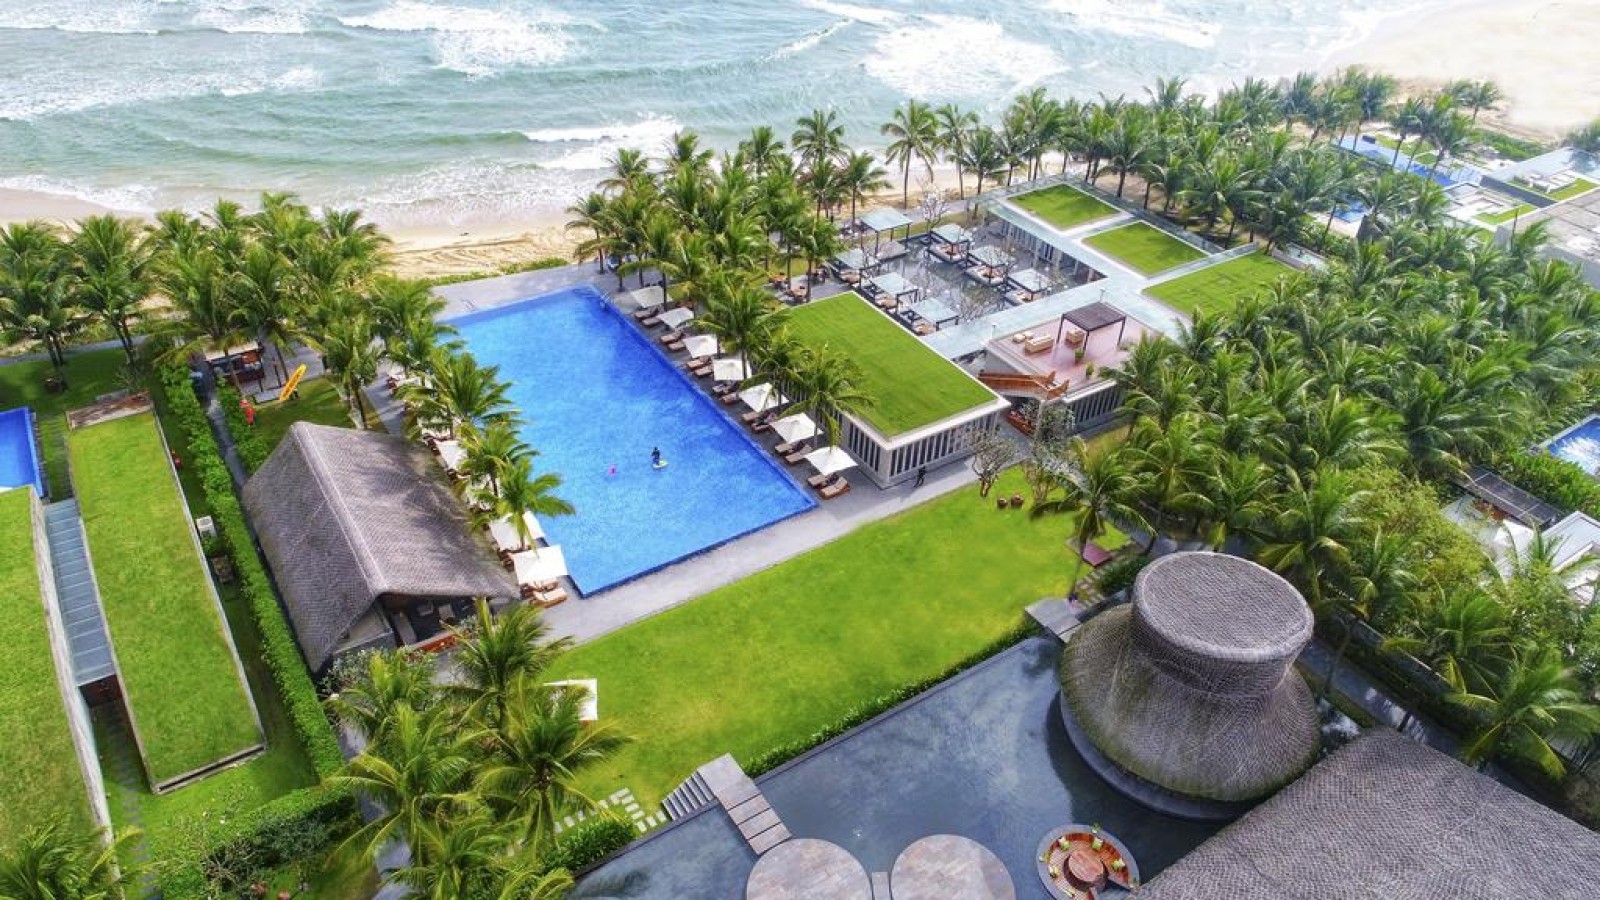 toan canh resort Naman Retreat Da Nang - Top 10 resort Đà Nẵng gần biển giá tốt nhất 2020